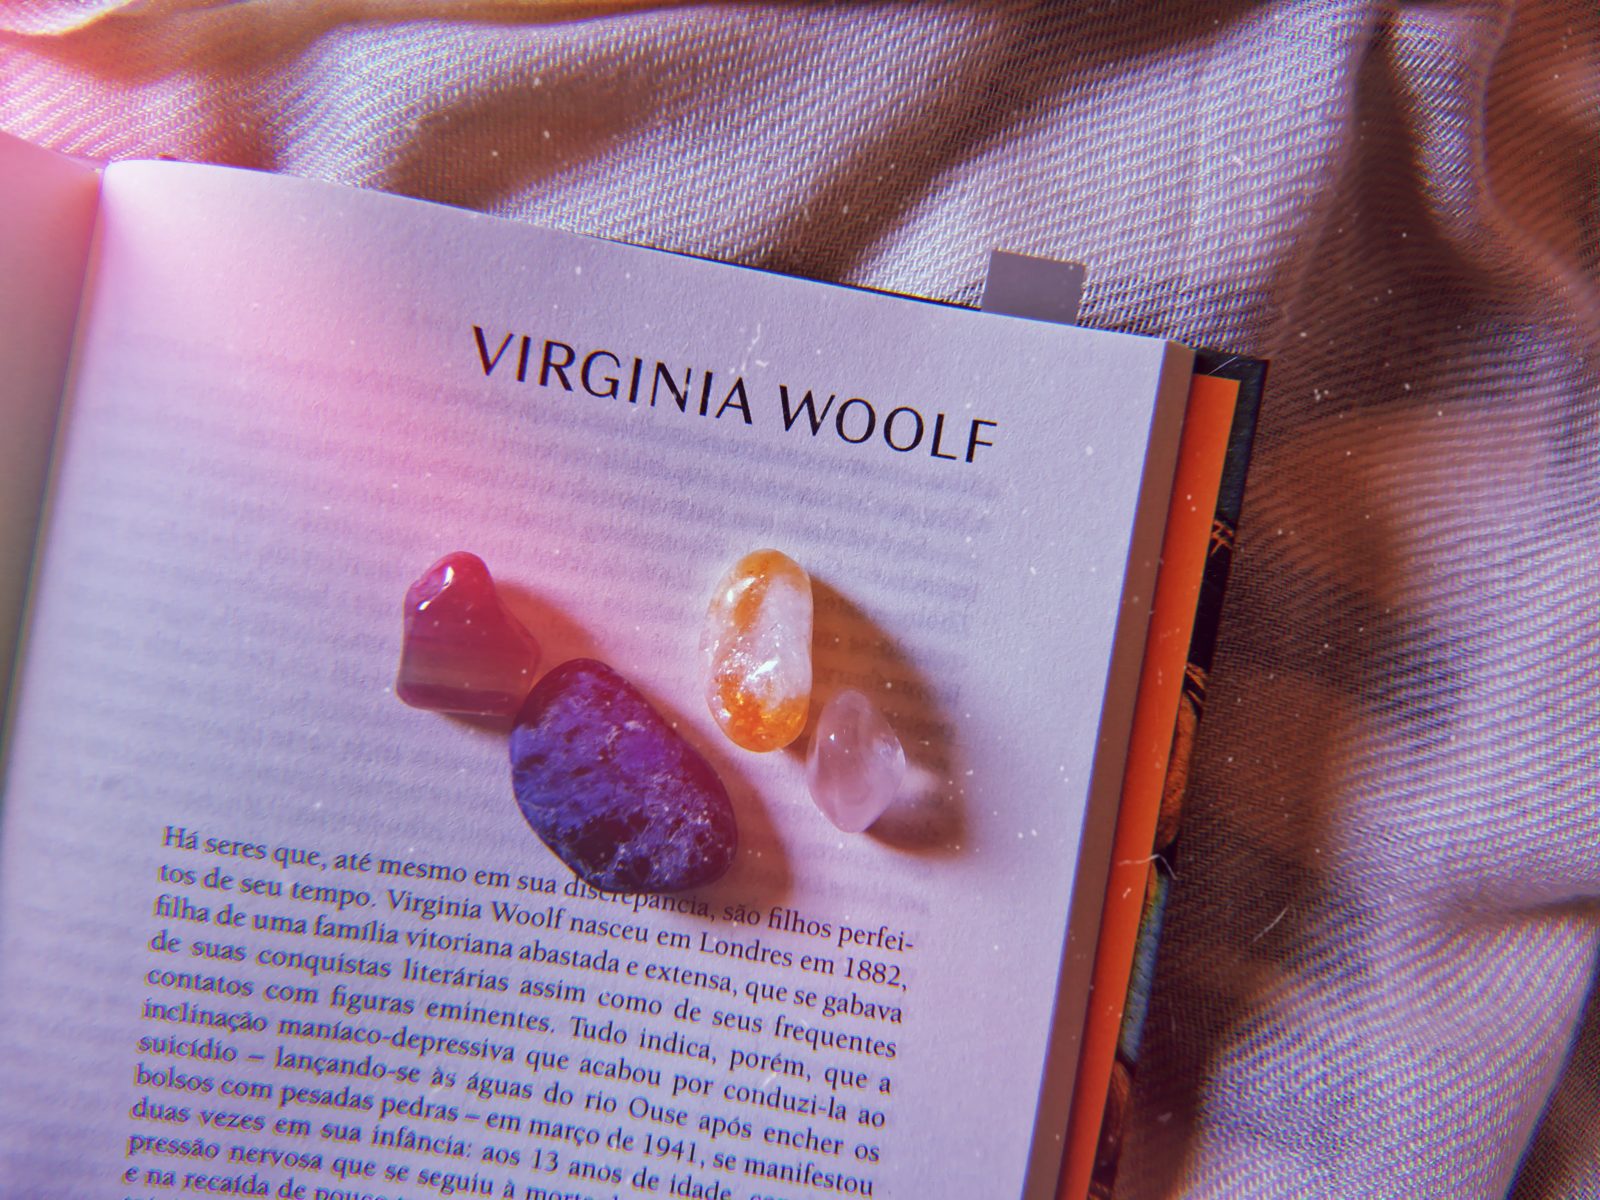 Capítulo sobre Virginia Woolf no livro "Mulheres, Mitos e Deusas", lançado pela Goya.